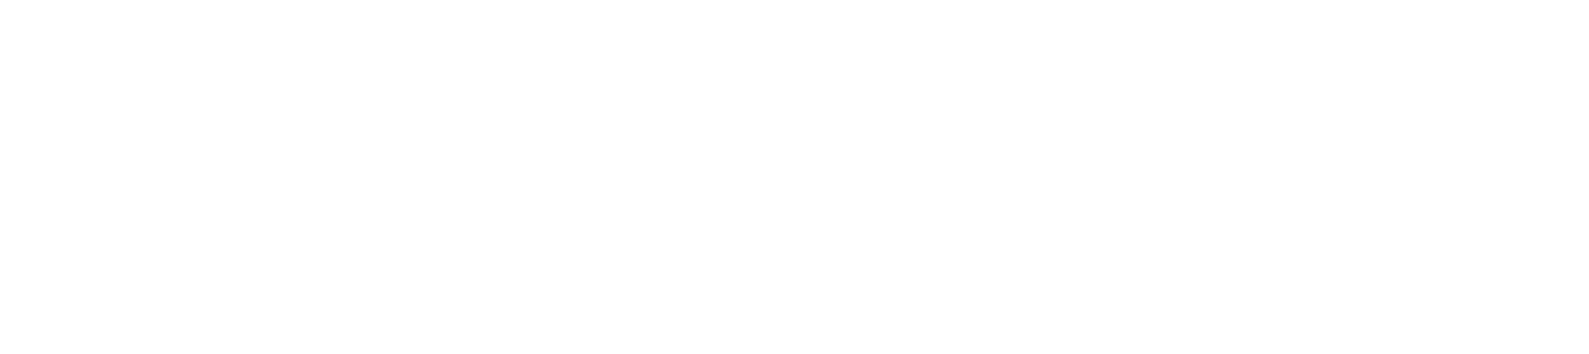 ClubRunner Logo